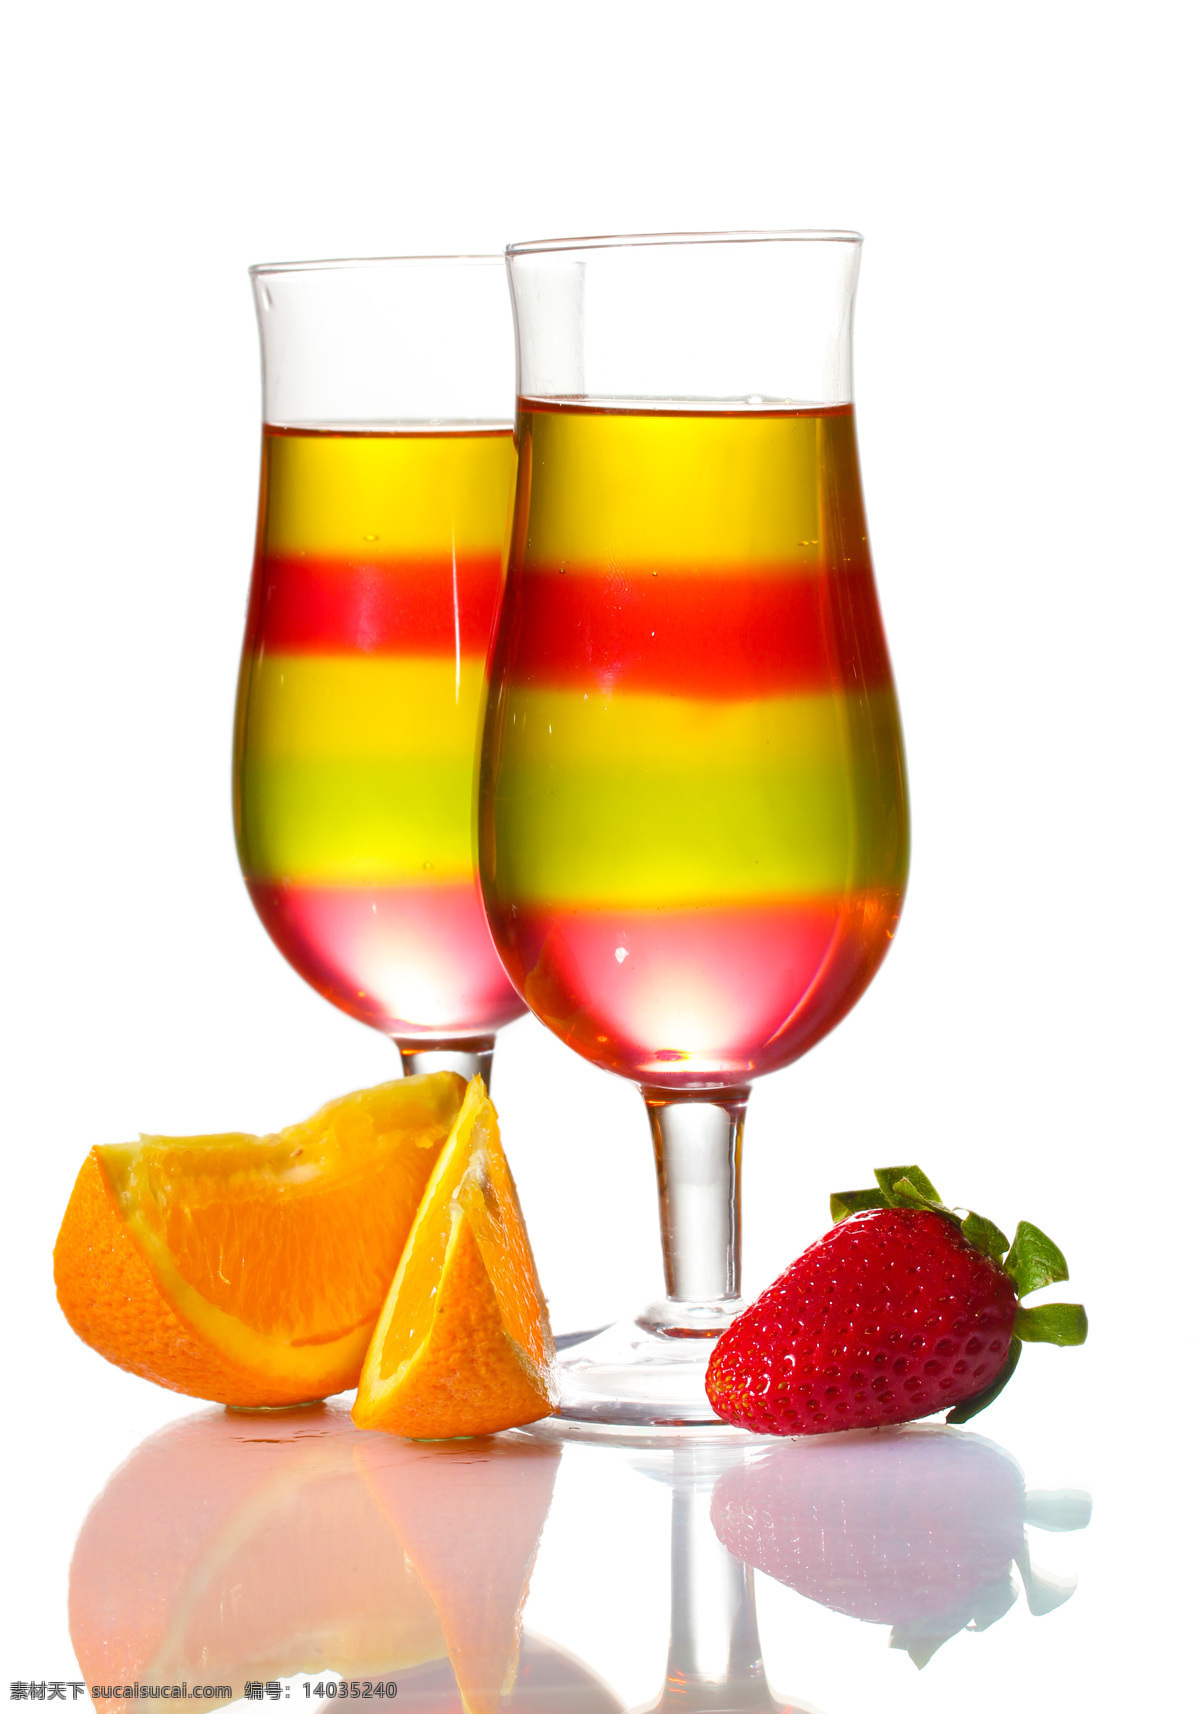 果汁饮料 新鲜水果 玻璃杯 橙子 草莓 酒水饮料 餐饮美食 白色